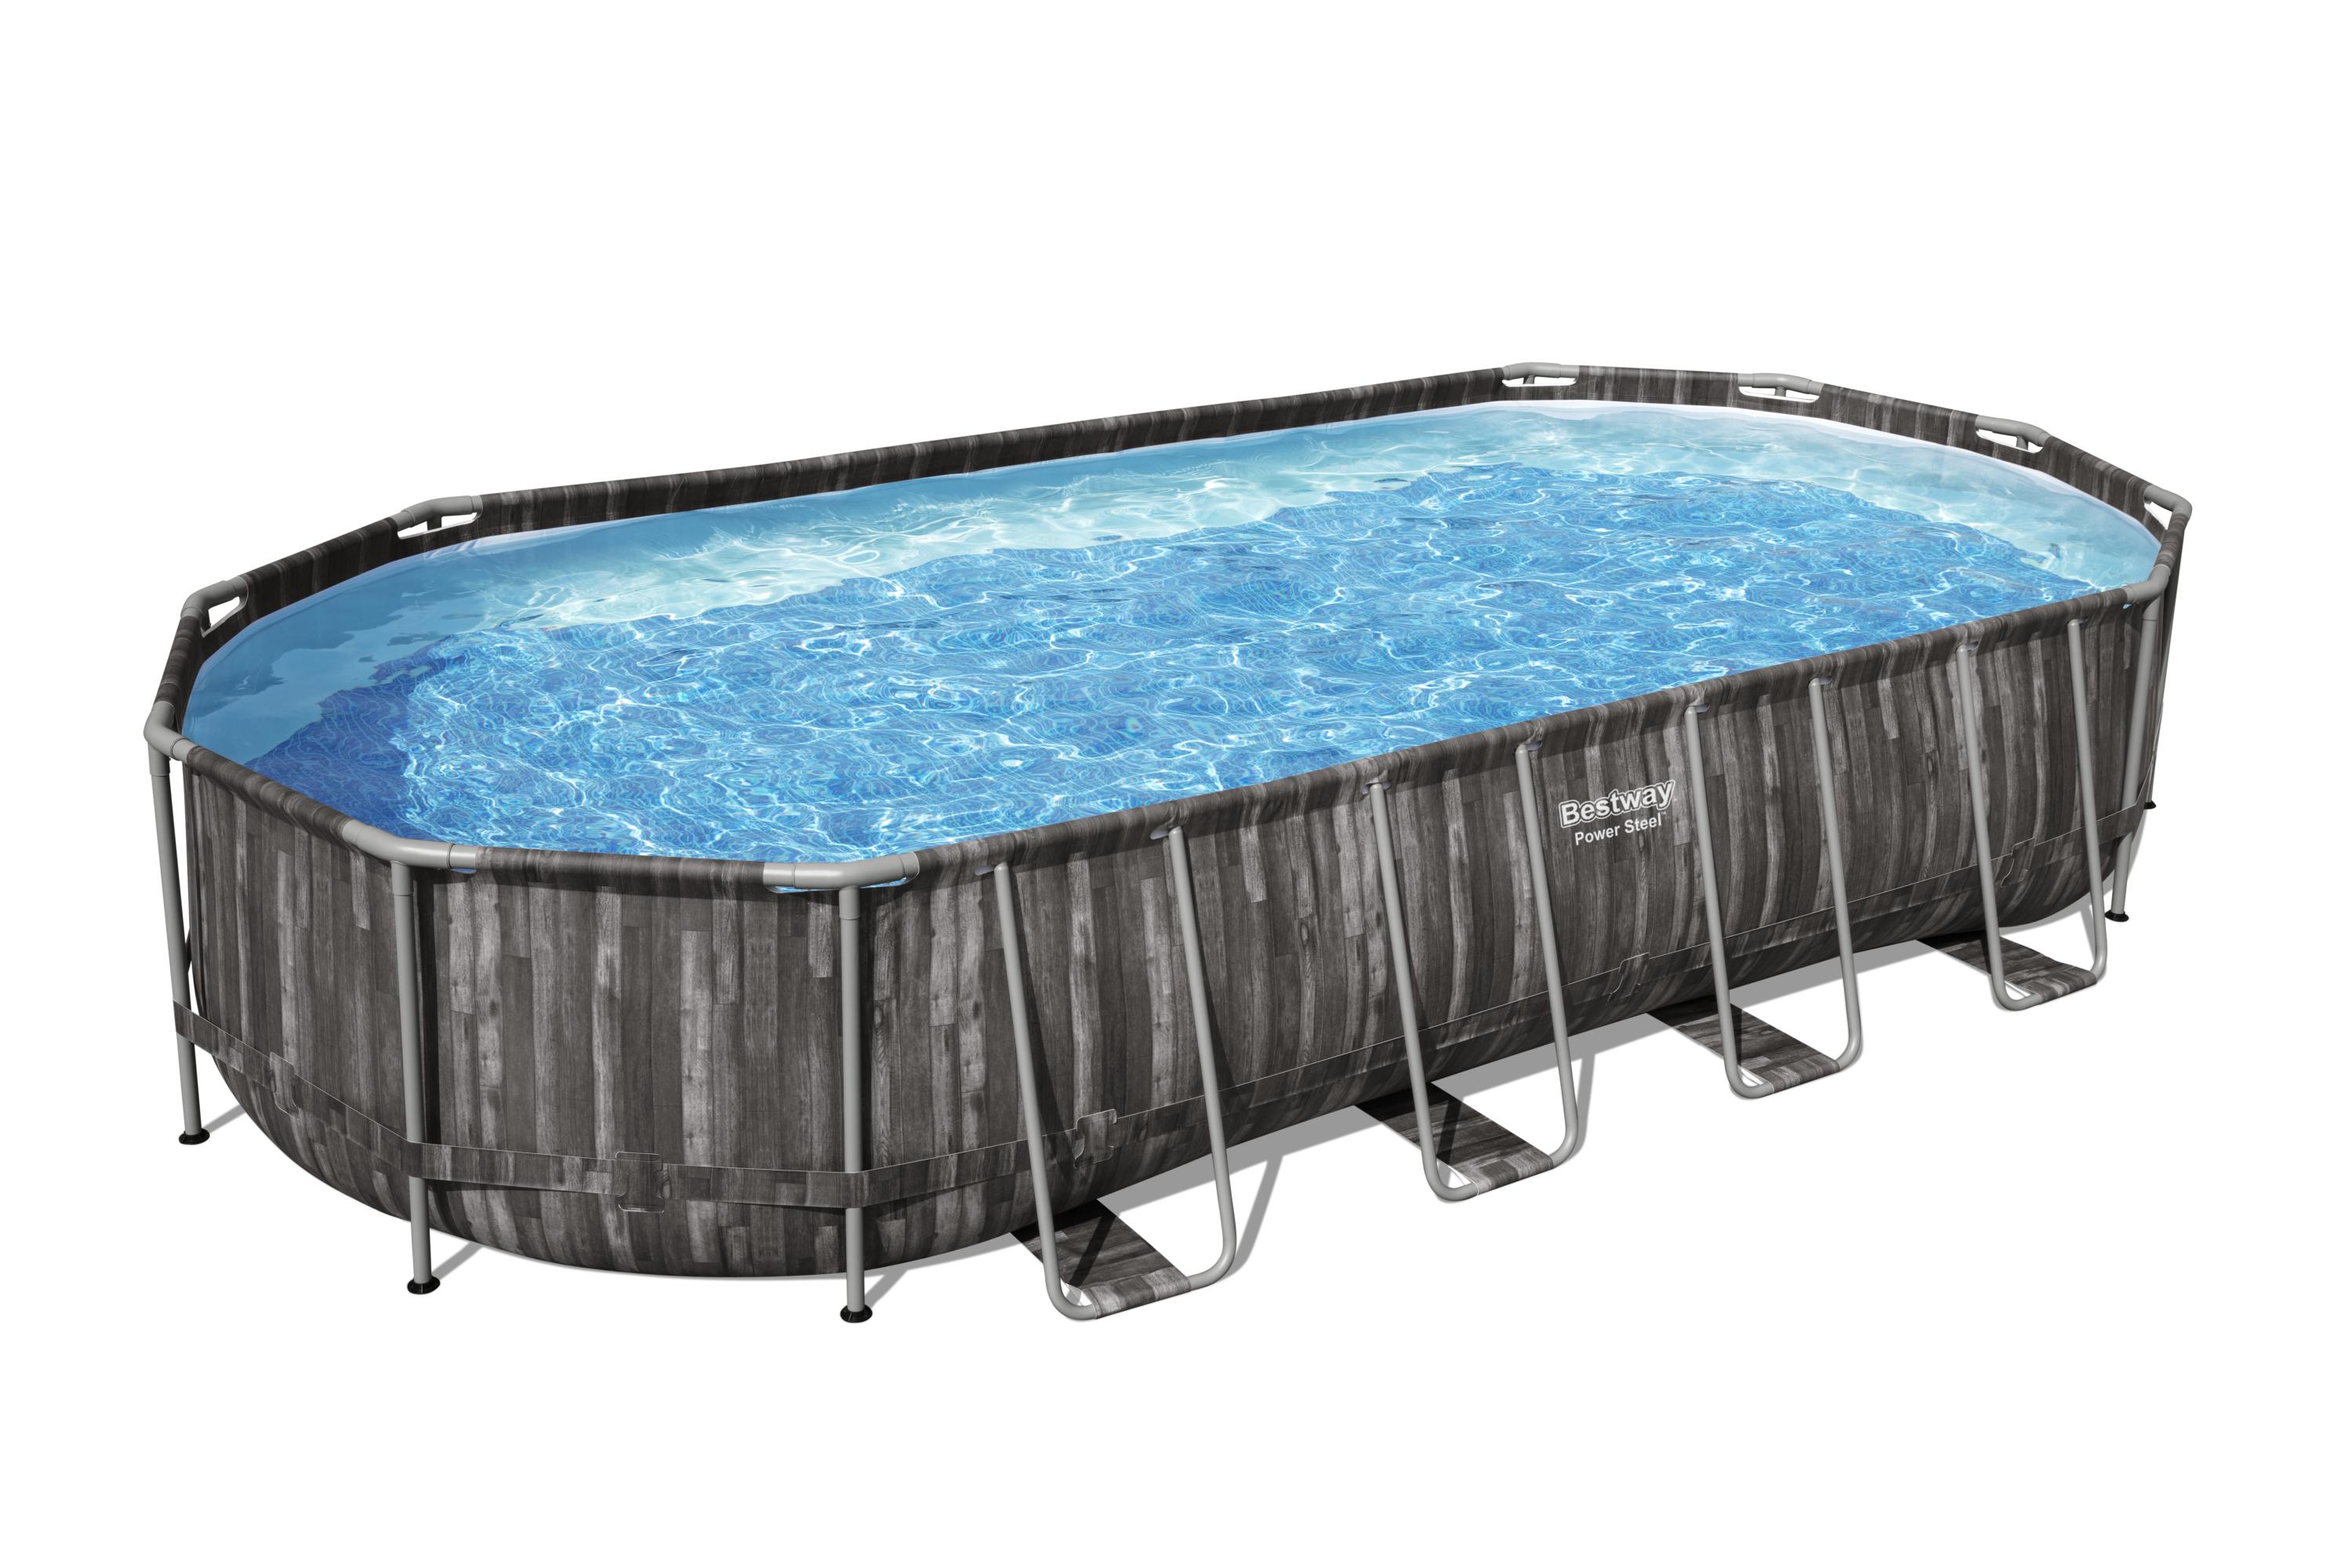 Nadzemní bazén Power Steel™, 732 x 366 x 122 cm, kartušová filtrace 9463 l/hod + příslušenství, Bestway 5611T